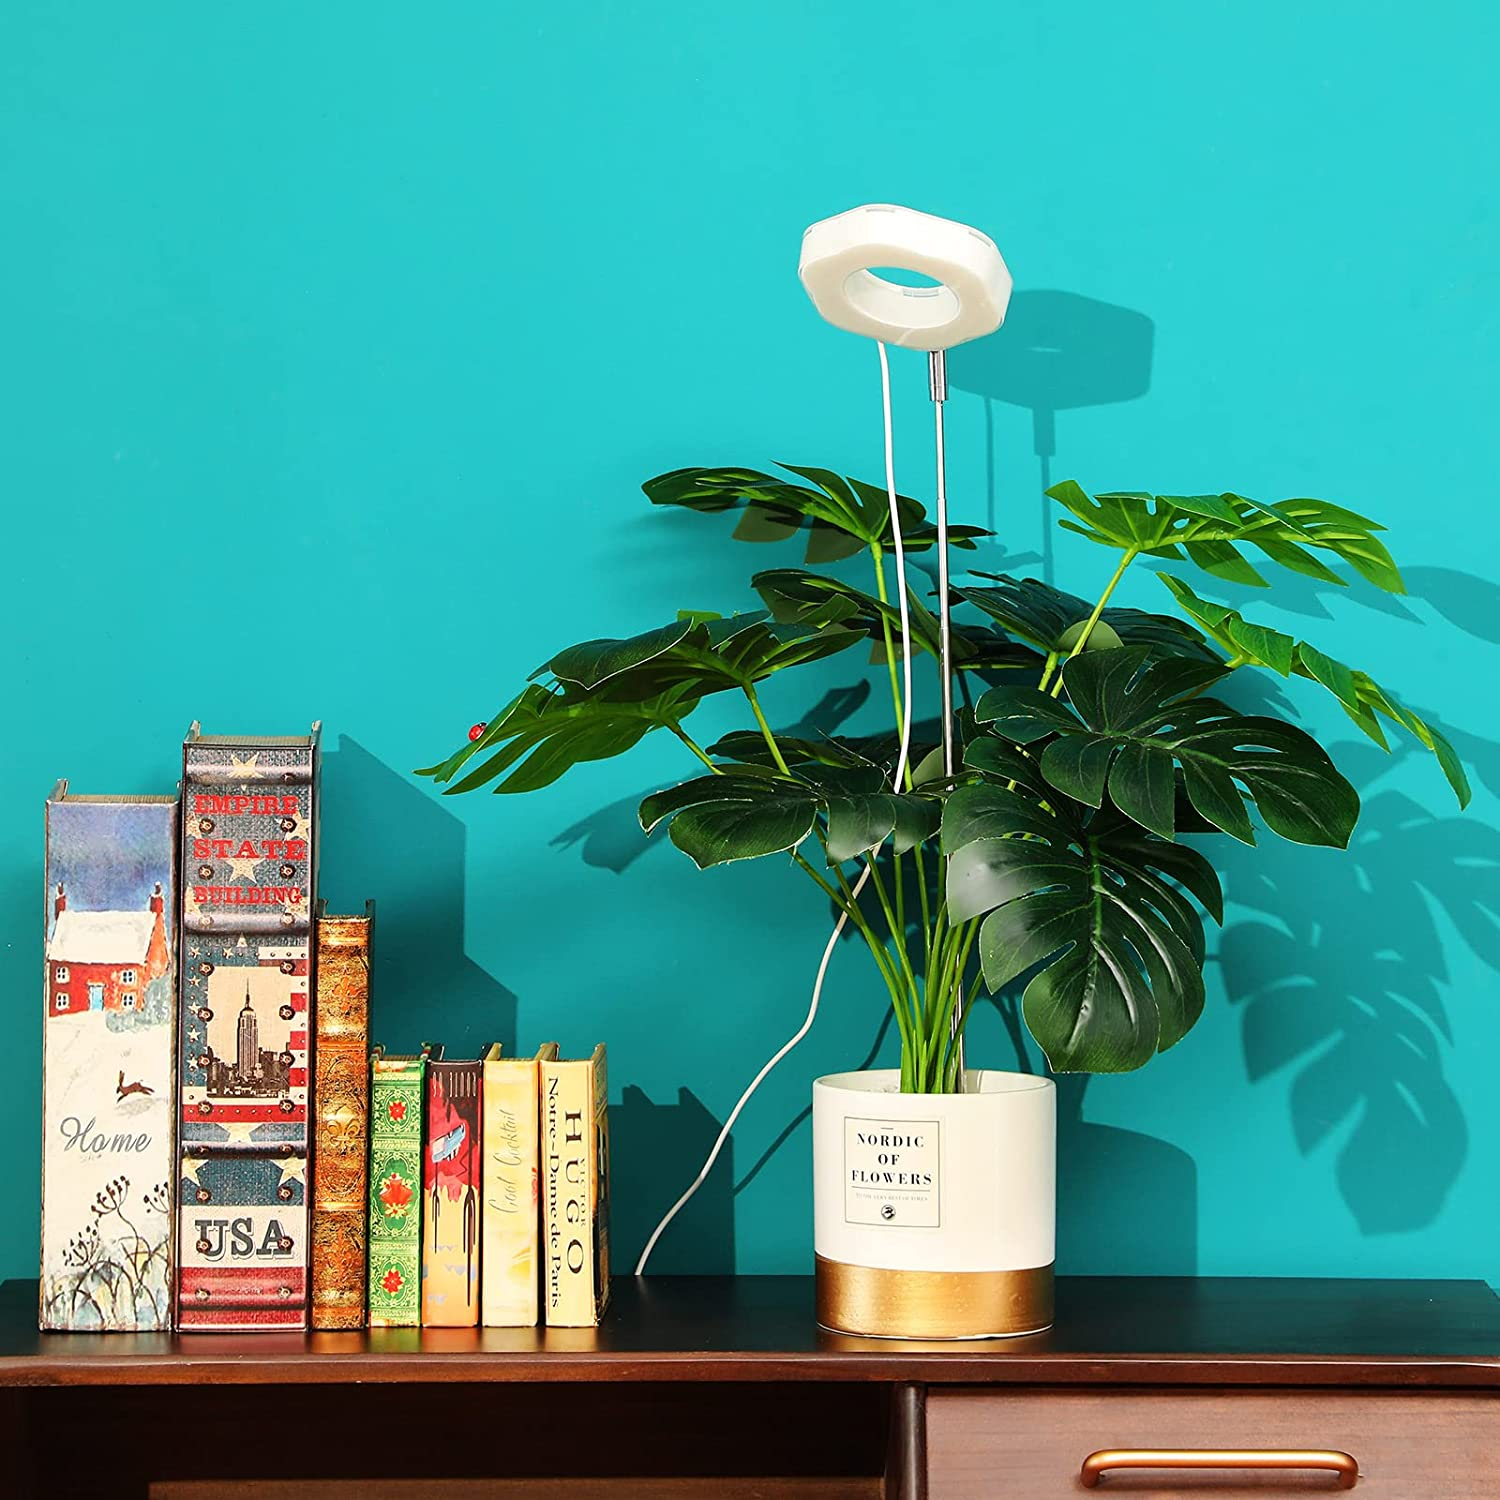 Lights Warmweiß/Weiß INF Hexagon LED-Lampe Pflanzen Zimmerpflanzen für Grow für